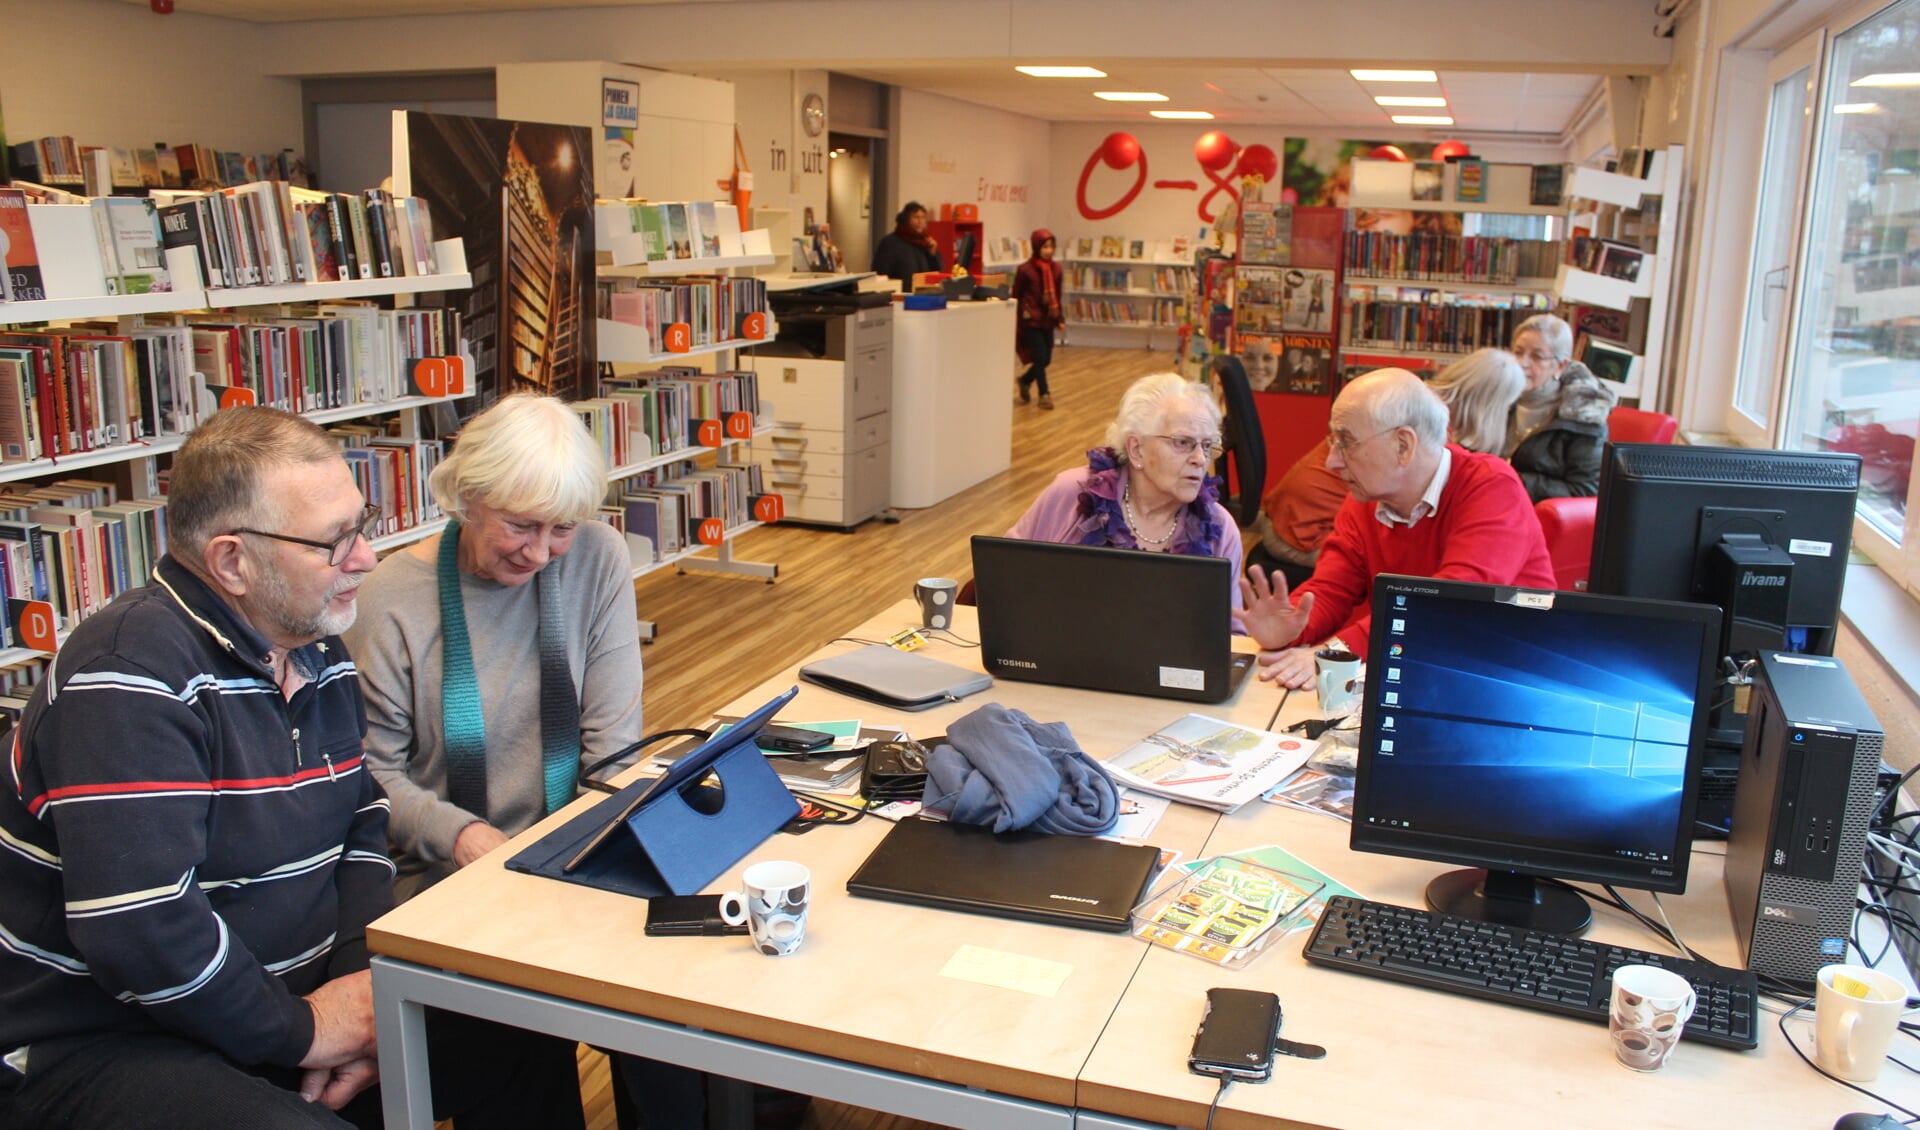  Het leercentrum van Idea SeniorWeb bevindt zich in de bibliotheek aan de Nachtegaallaan 30 te Maartensdijk. 